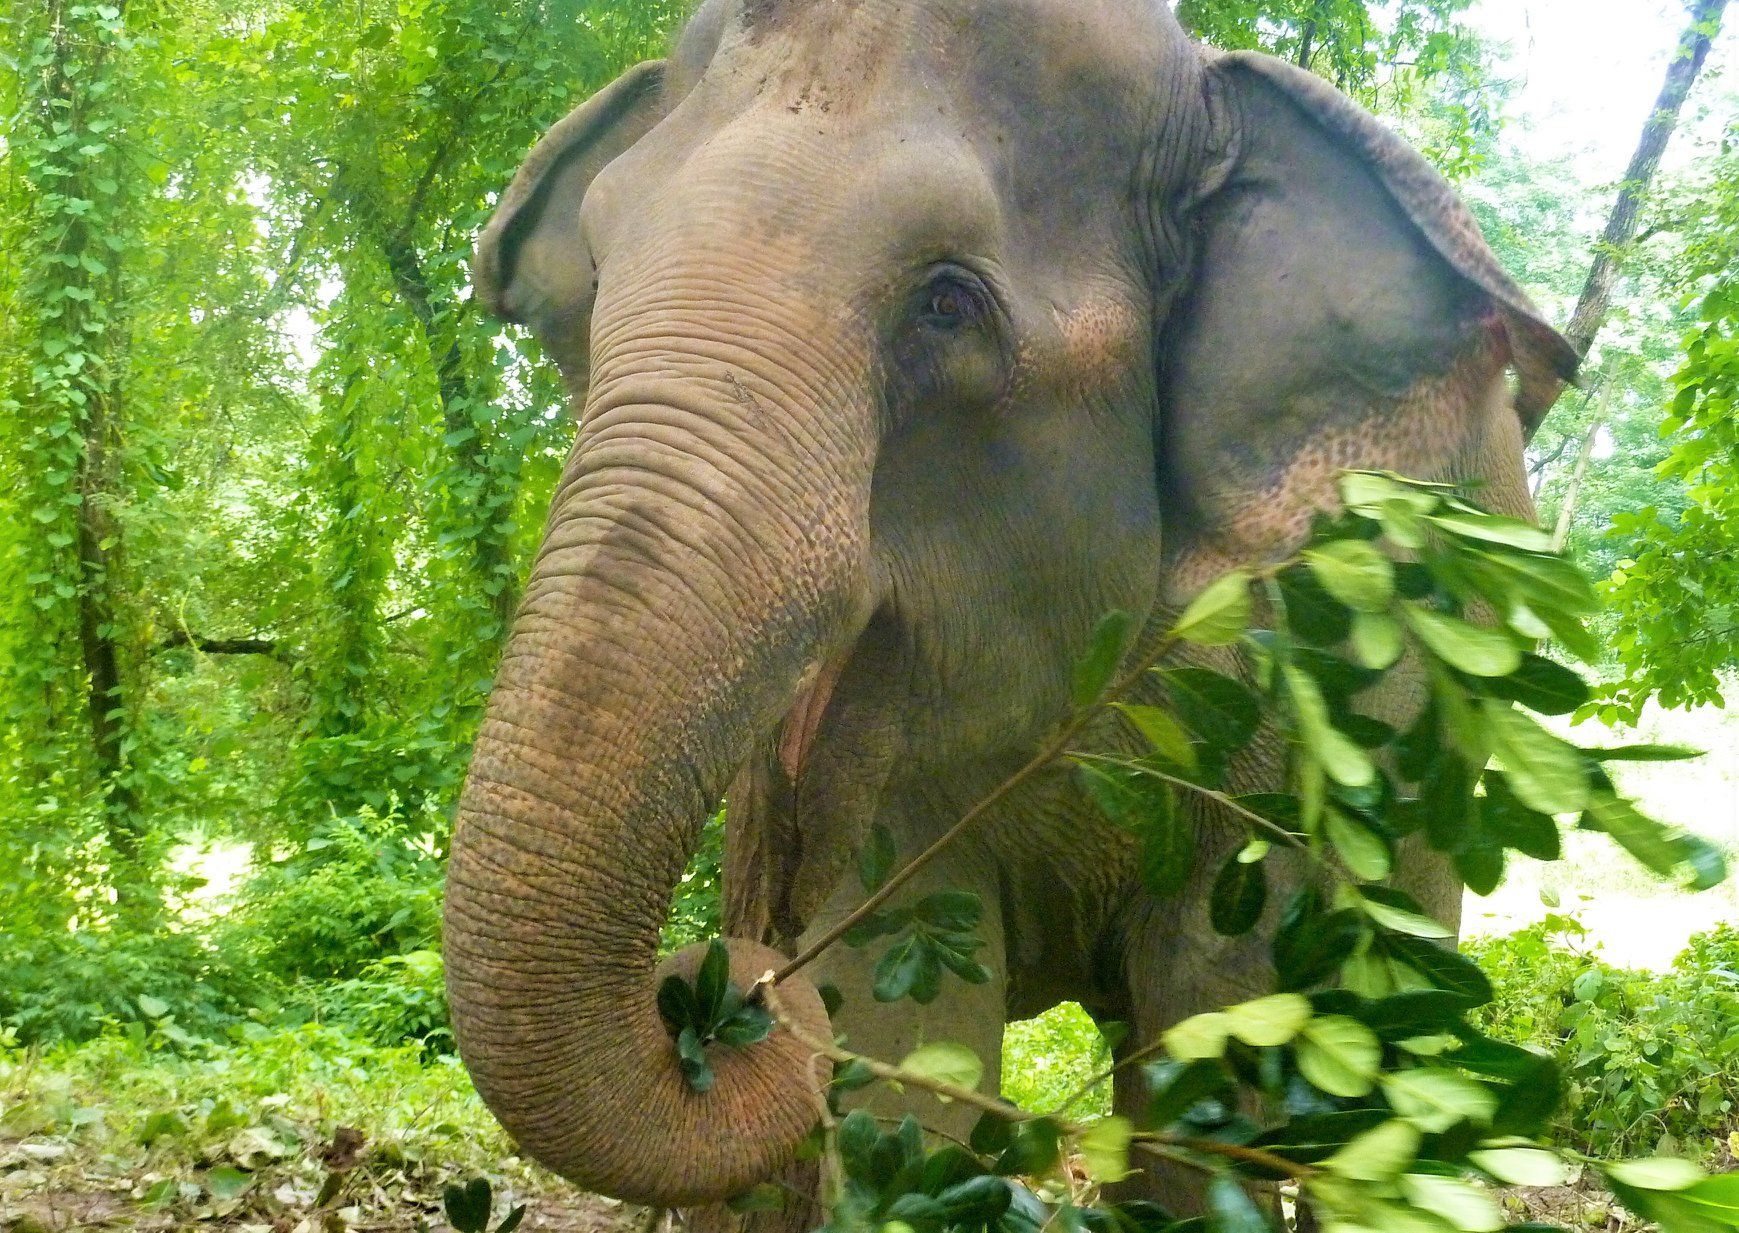 Ethical elephant tourism